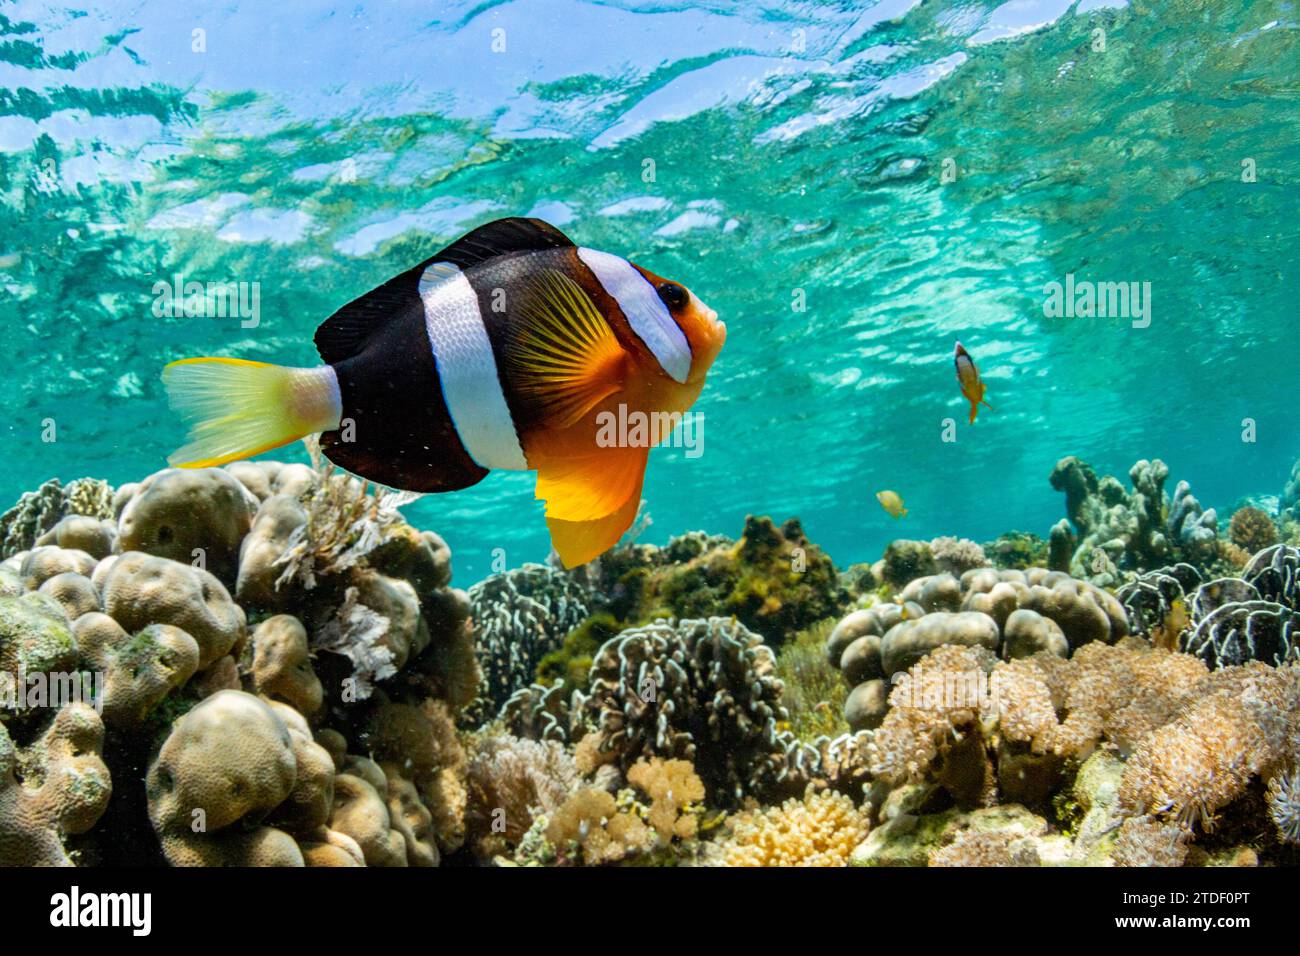 Un pesce anemone Clarks adulto (Amphiprion clarkii) che nuota sulla barriera corallina vicino all'isola di Bangka, Indonesia, Sud-est asiatico, Asia Foto Stock